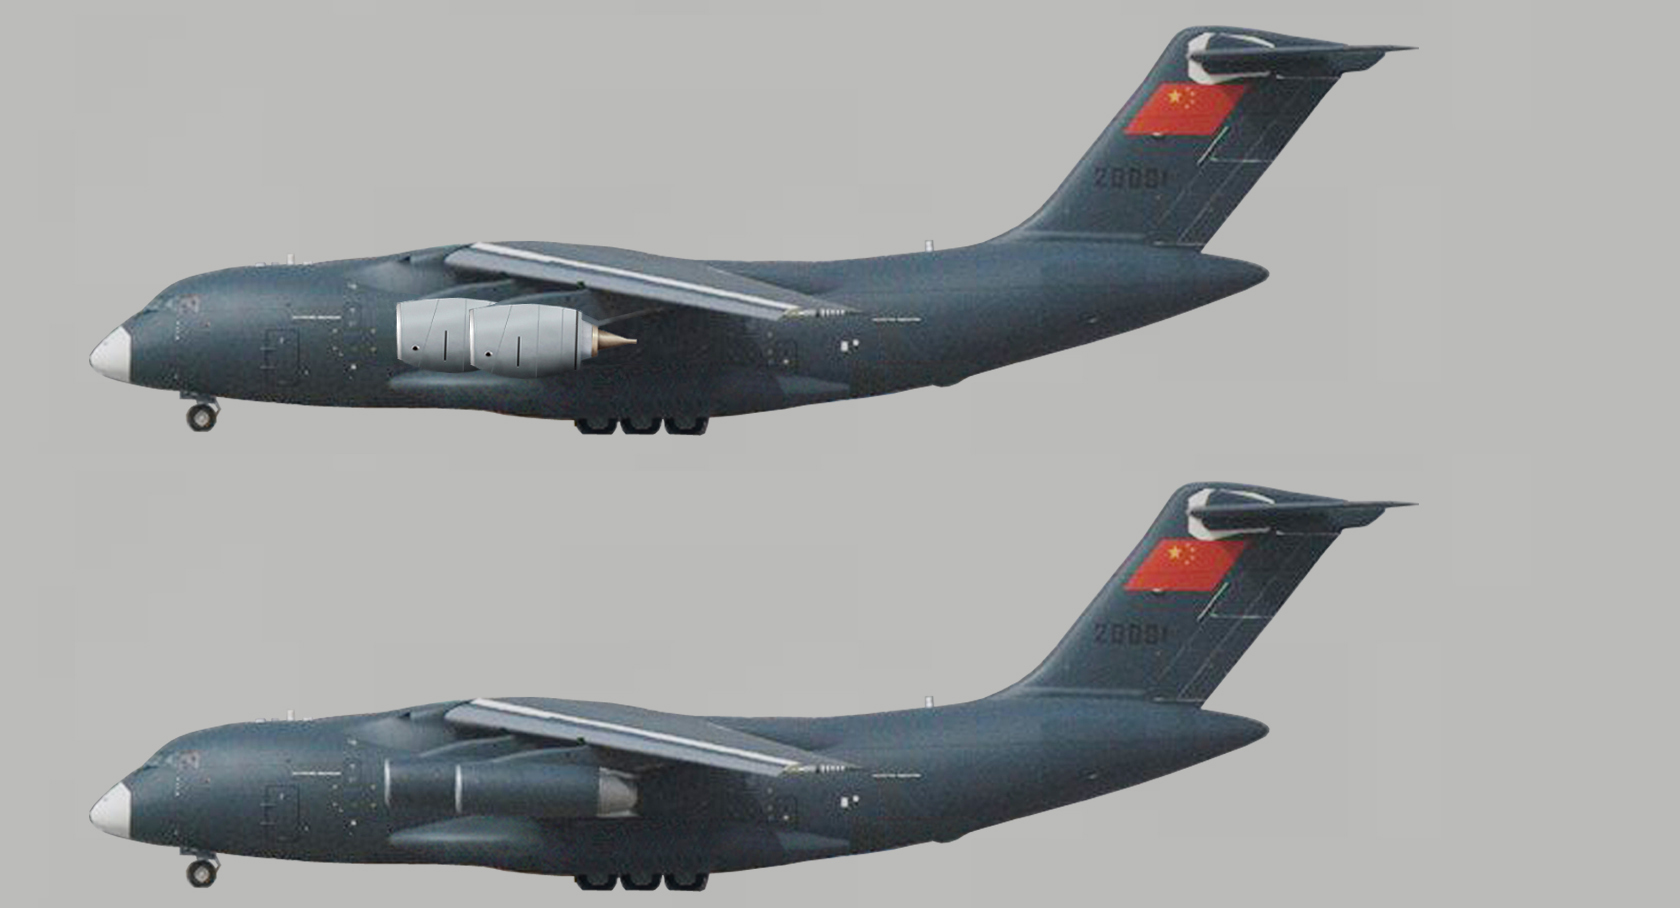 ТРДД, двигатель, WS-20, Россия,  Д-30КП-2, Y-20, транспортный самолет, Ил-76, бомбардировщик, H-6K